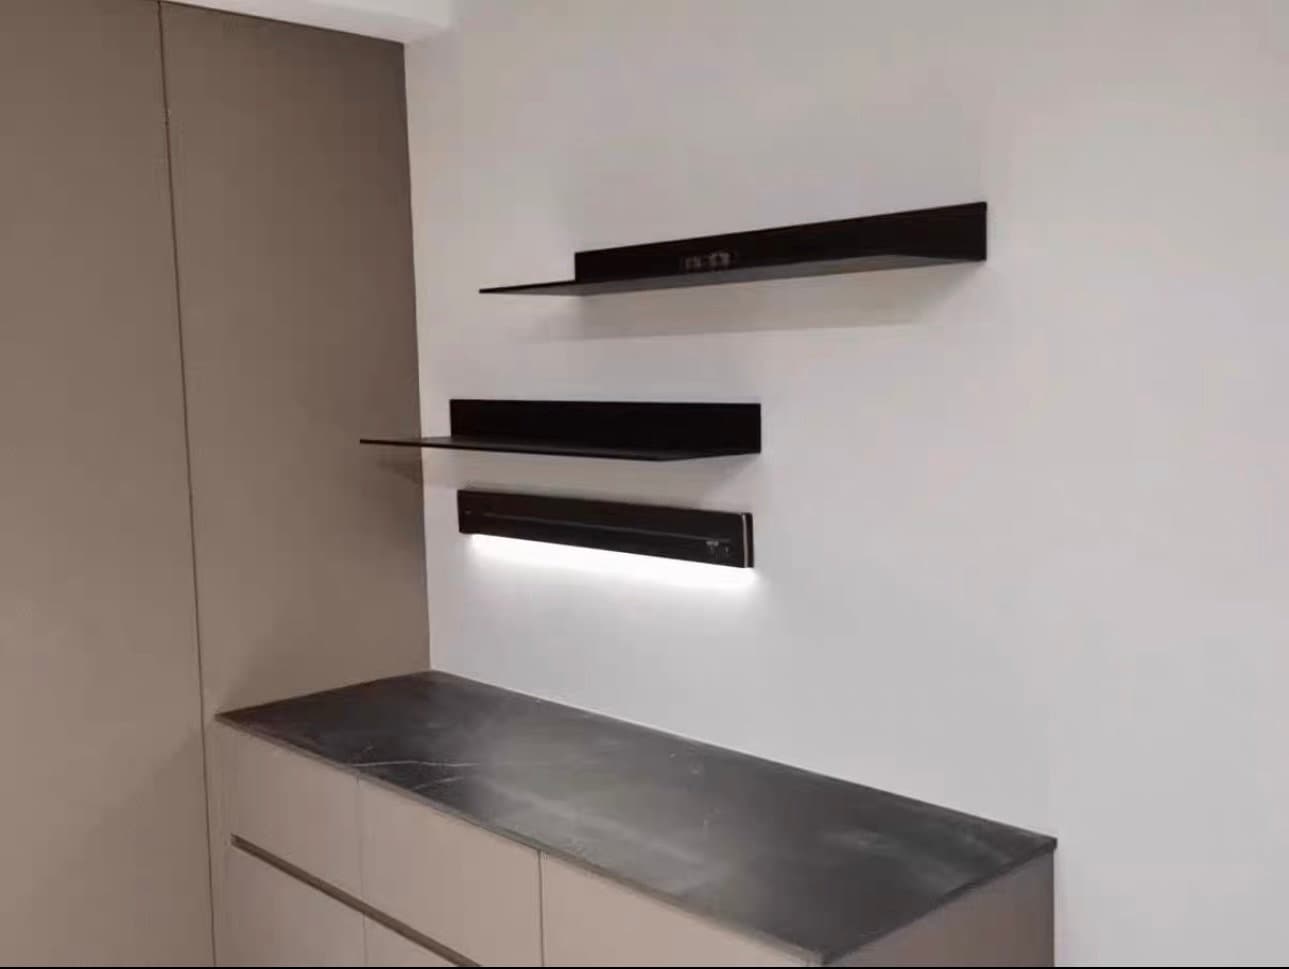 Aluminum Floating Shelf Without Light - Sleek Design